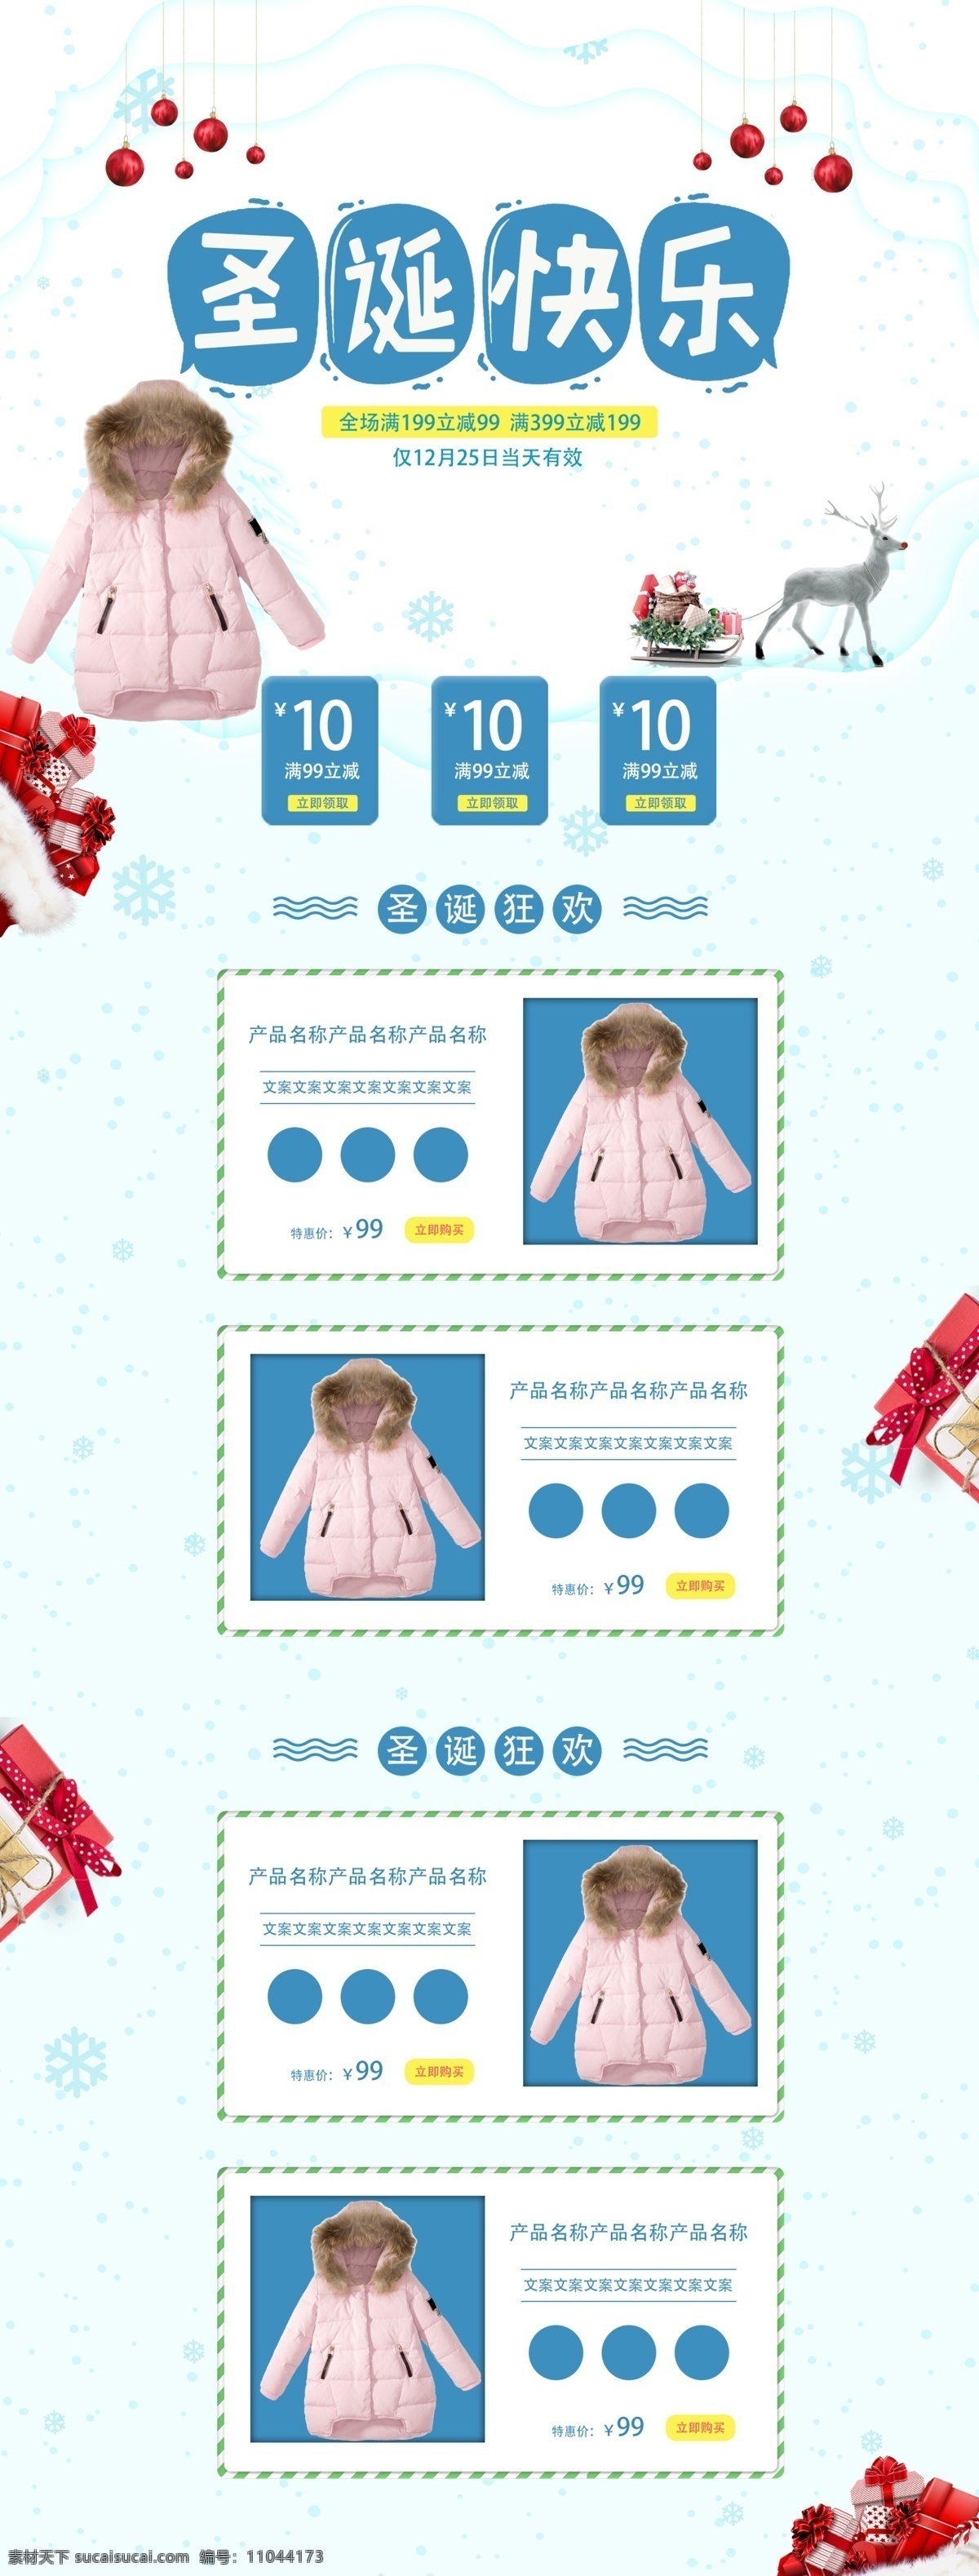 天猫 淘宝 蓝色 清新 圣诞快乐 电商 首页 模板 圣诞节 促销 折扣 大促 优惠 服装